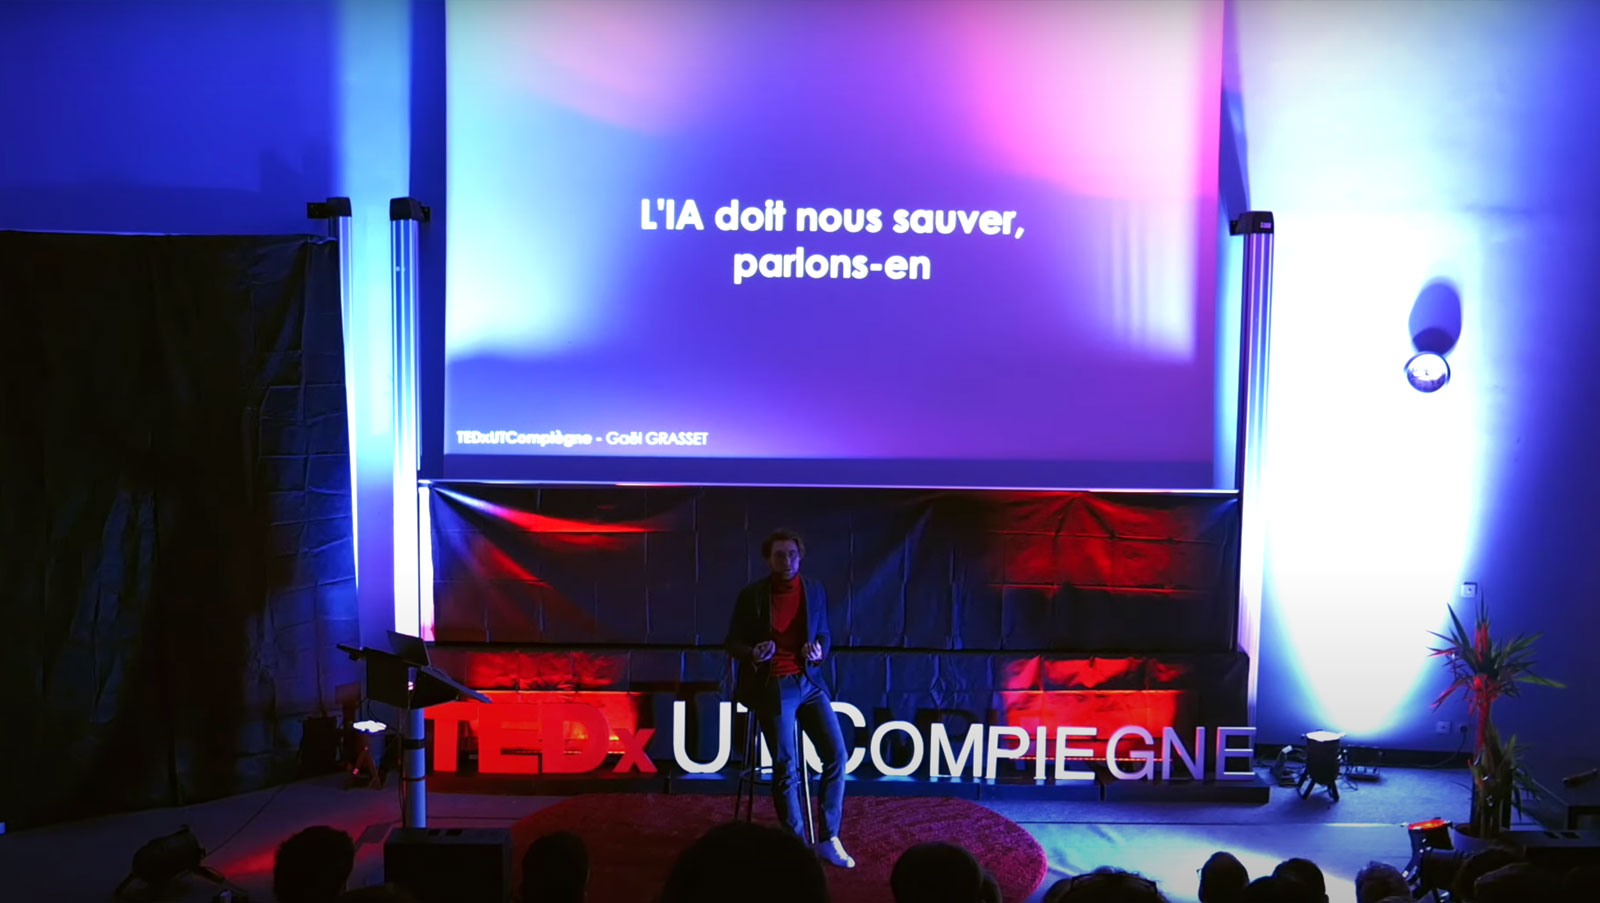 Vision for the future – TEDxUTCompiègne